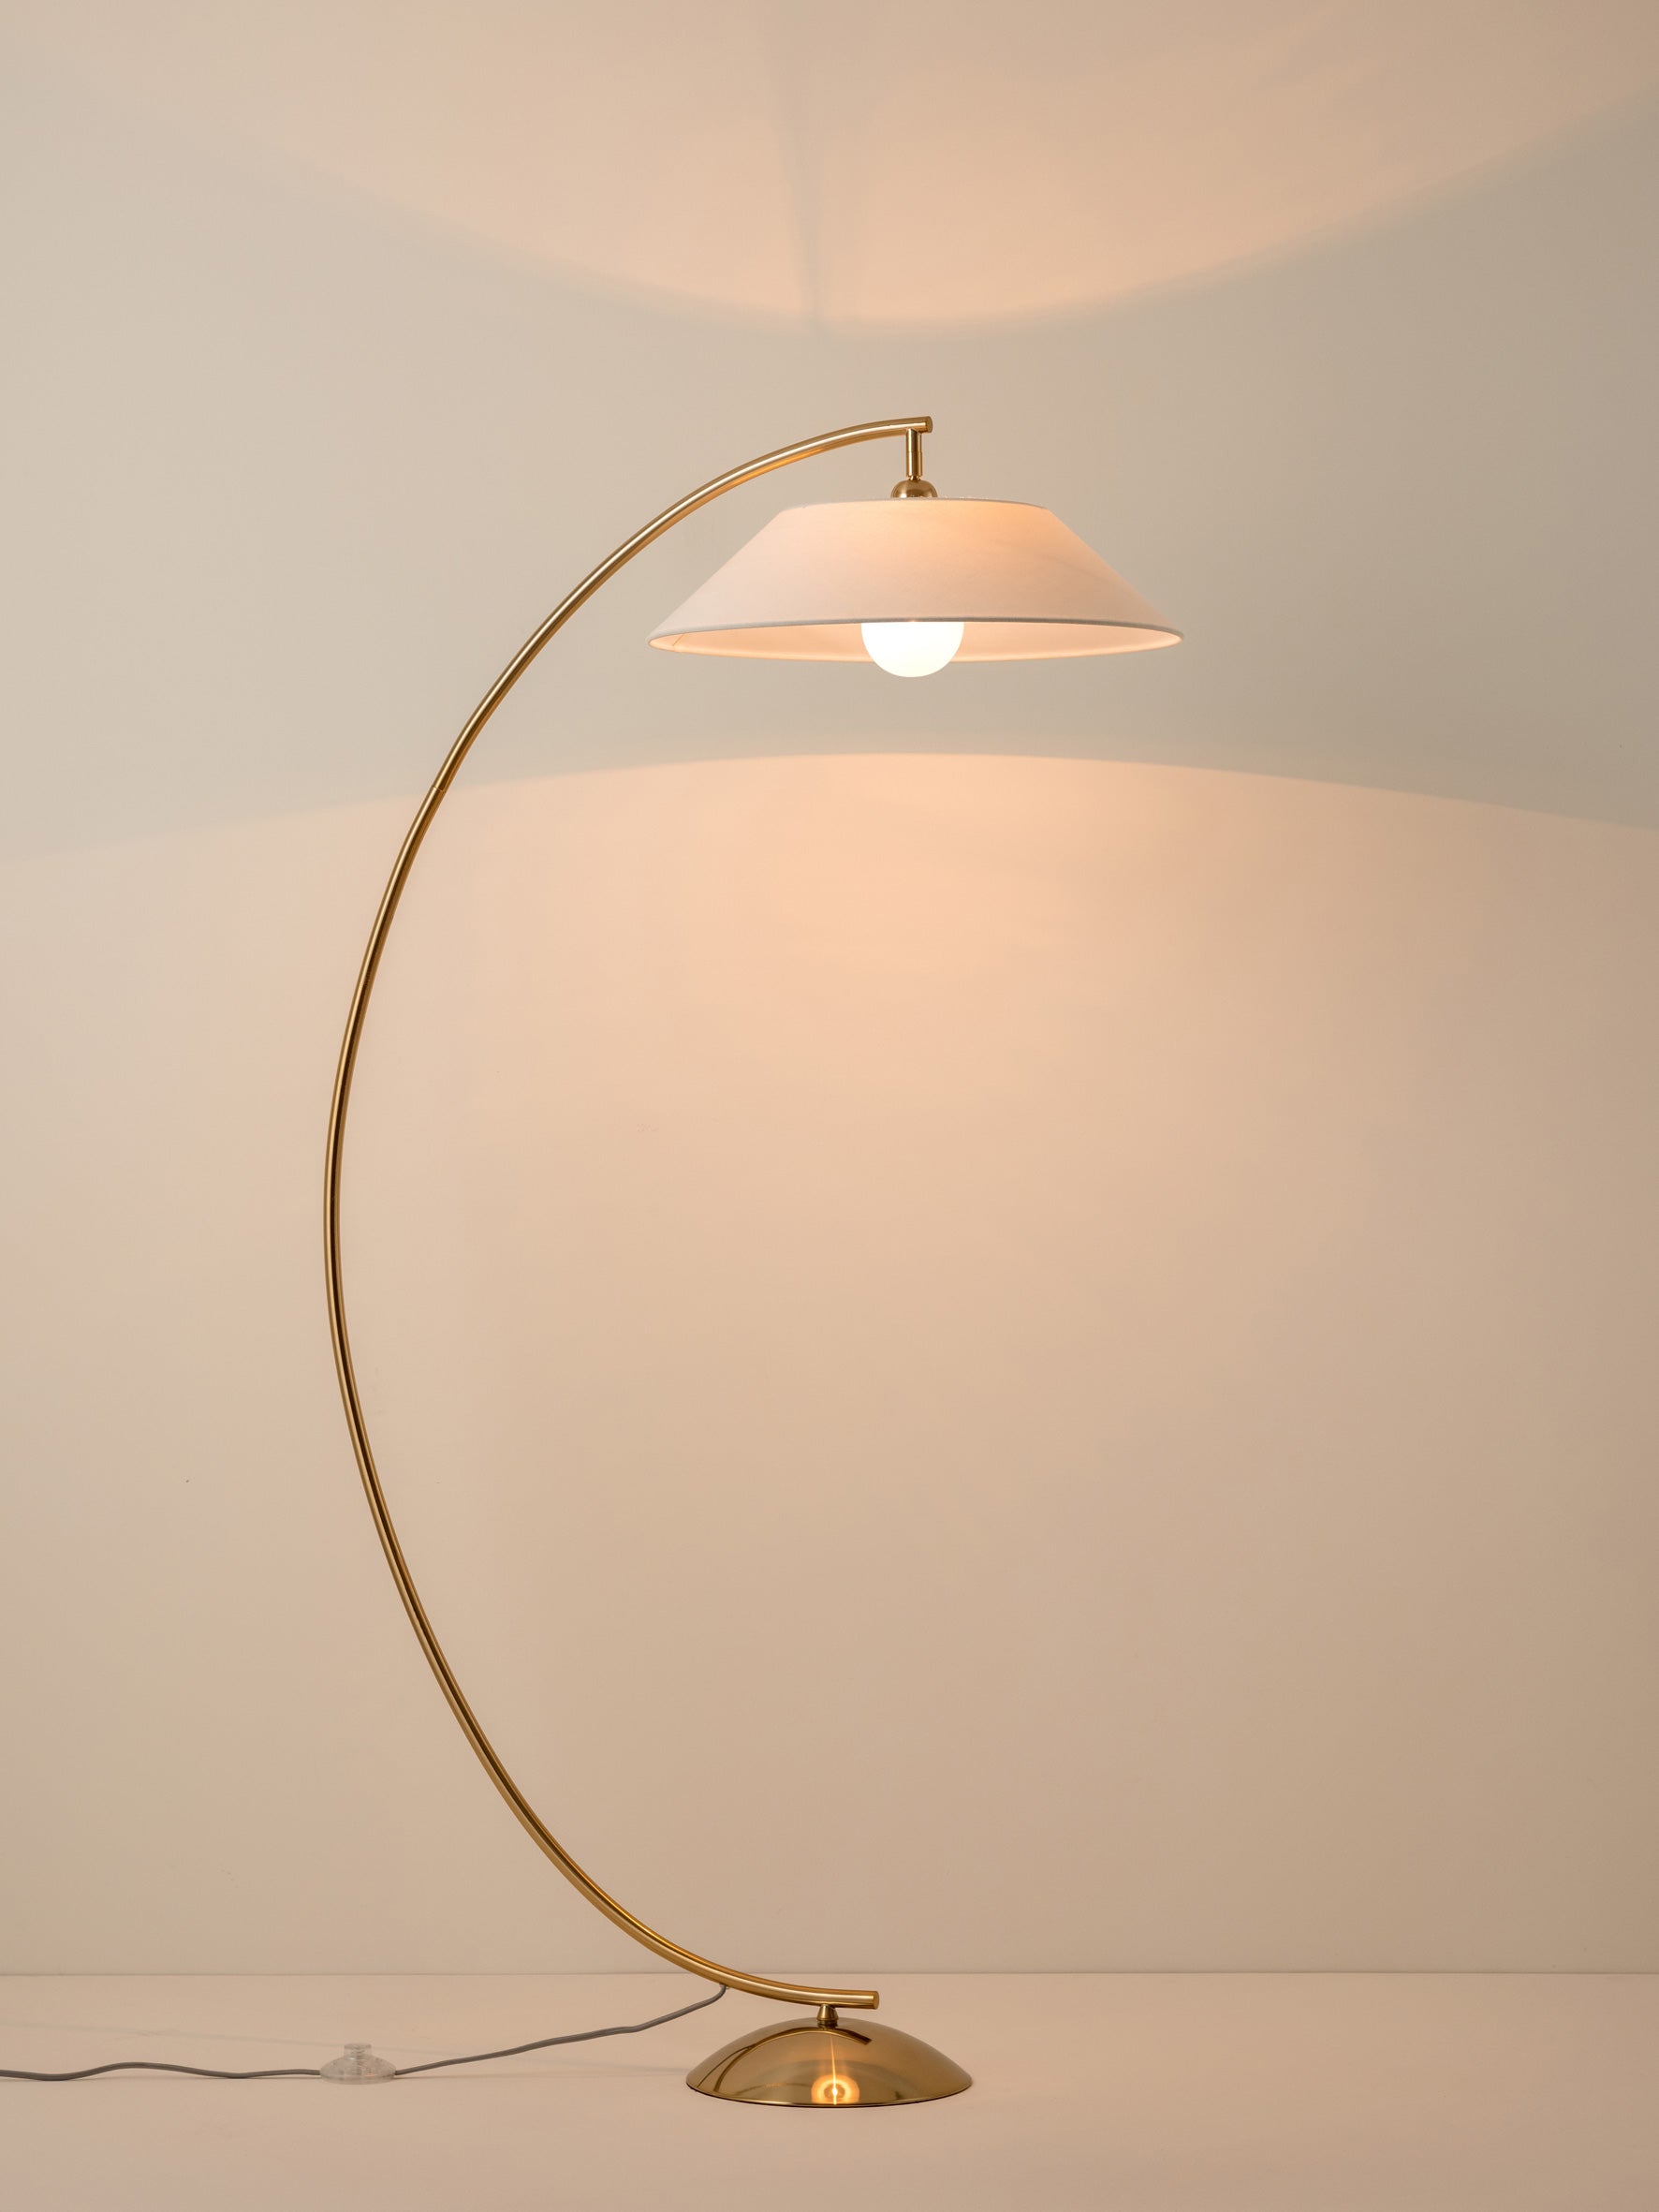 Circo - 1 light arc brass and natural linen floor lamp | Floor Lamp | Lights & Lamps Inc | USA